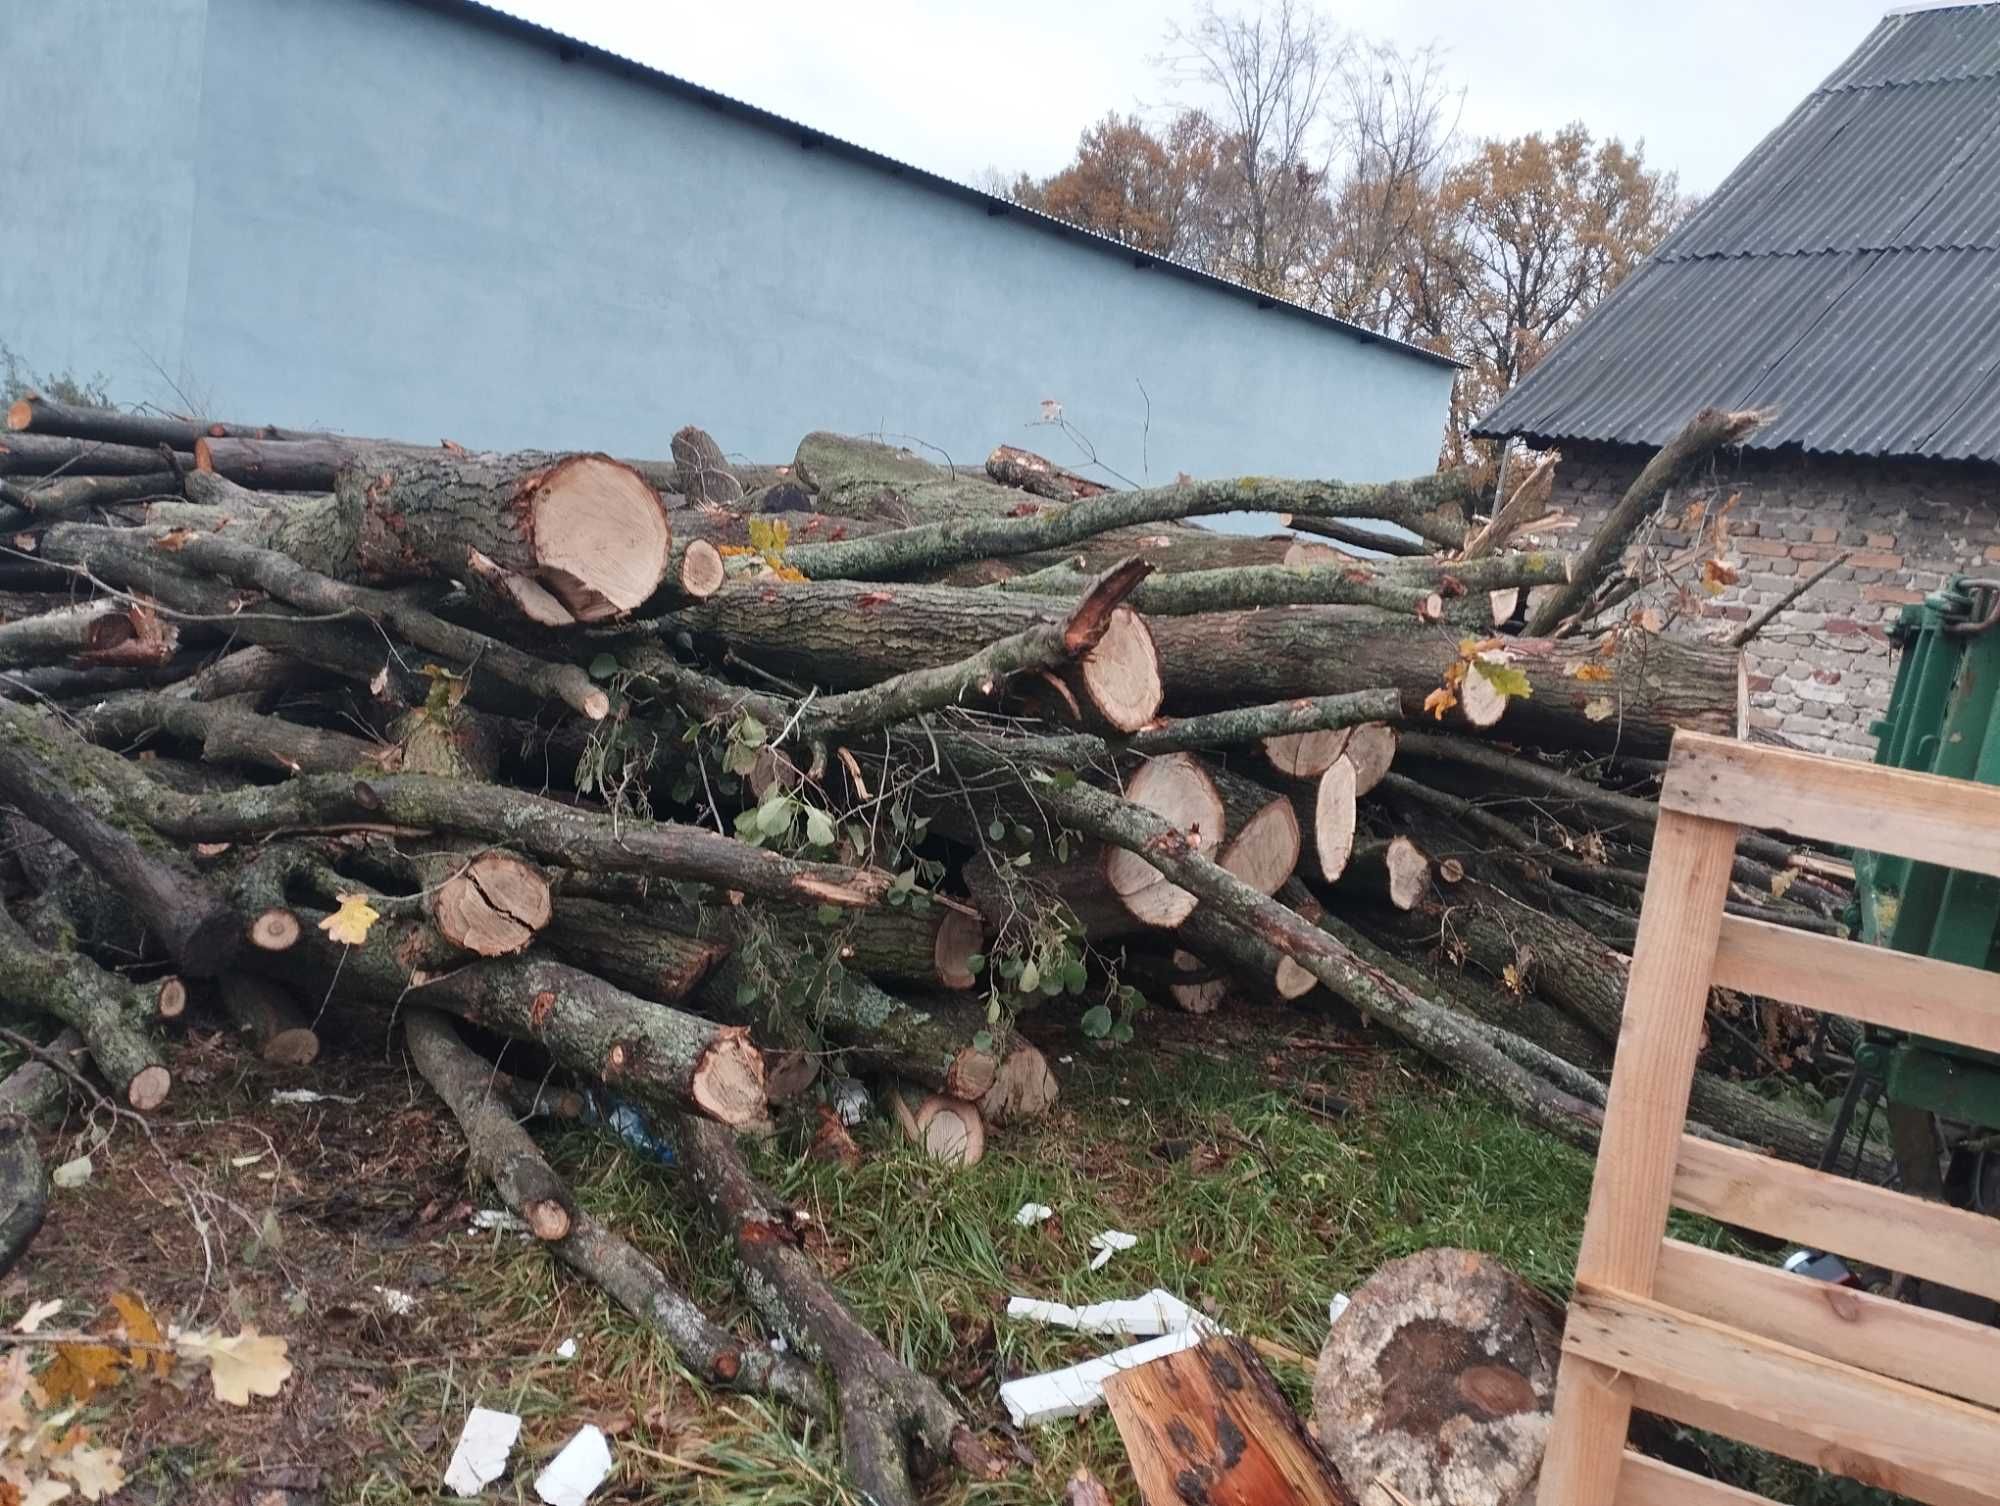 Drewno drzewo opałowe SOSNA POCIETA OPAŁ SUCHE